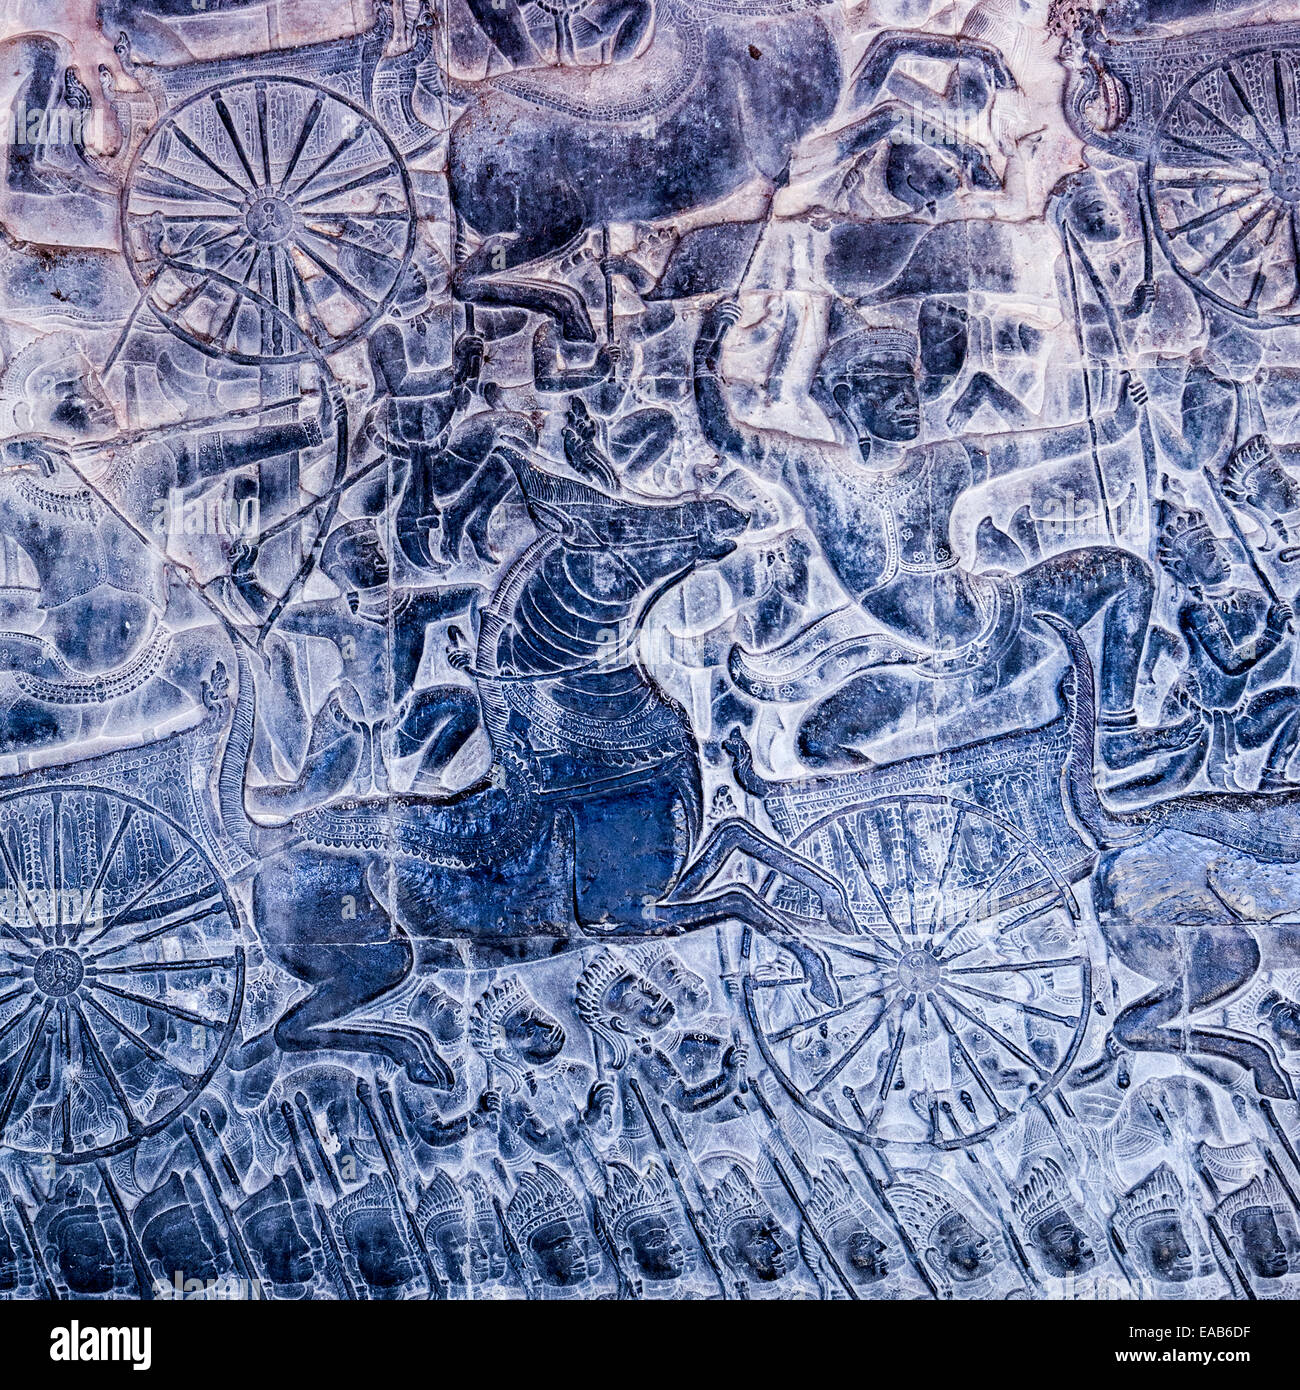 Kambodscha, Angkor Wat.  Detail mit Flachrelief zeigt die Kaurava Armee in der Schlacht von Kurukshetra. Stockfoto